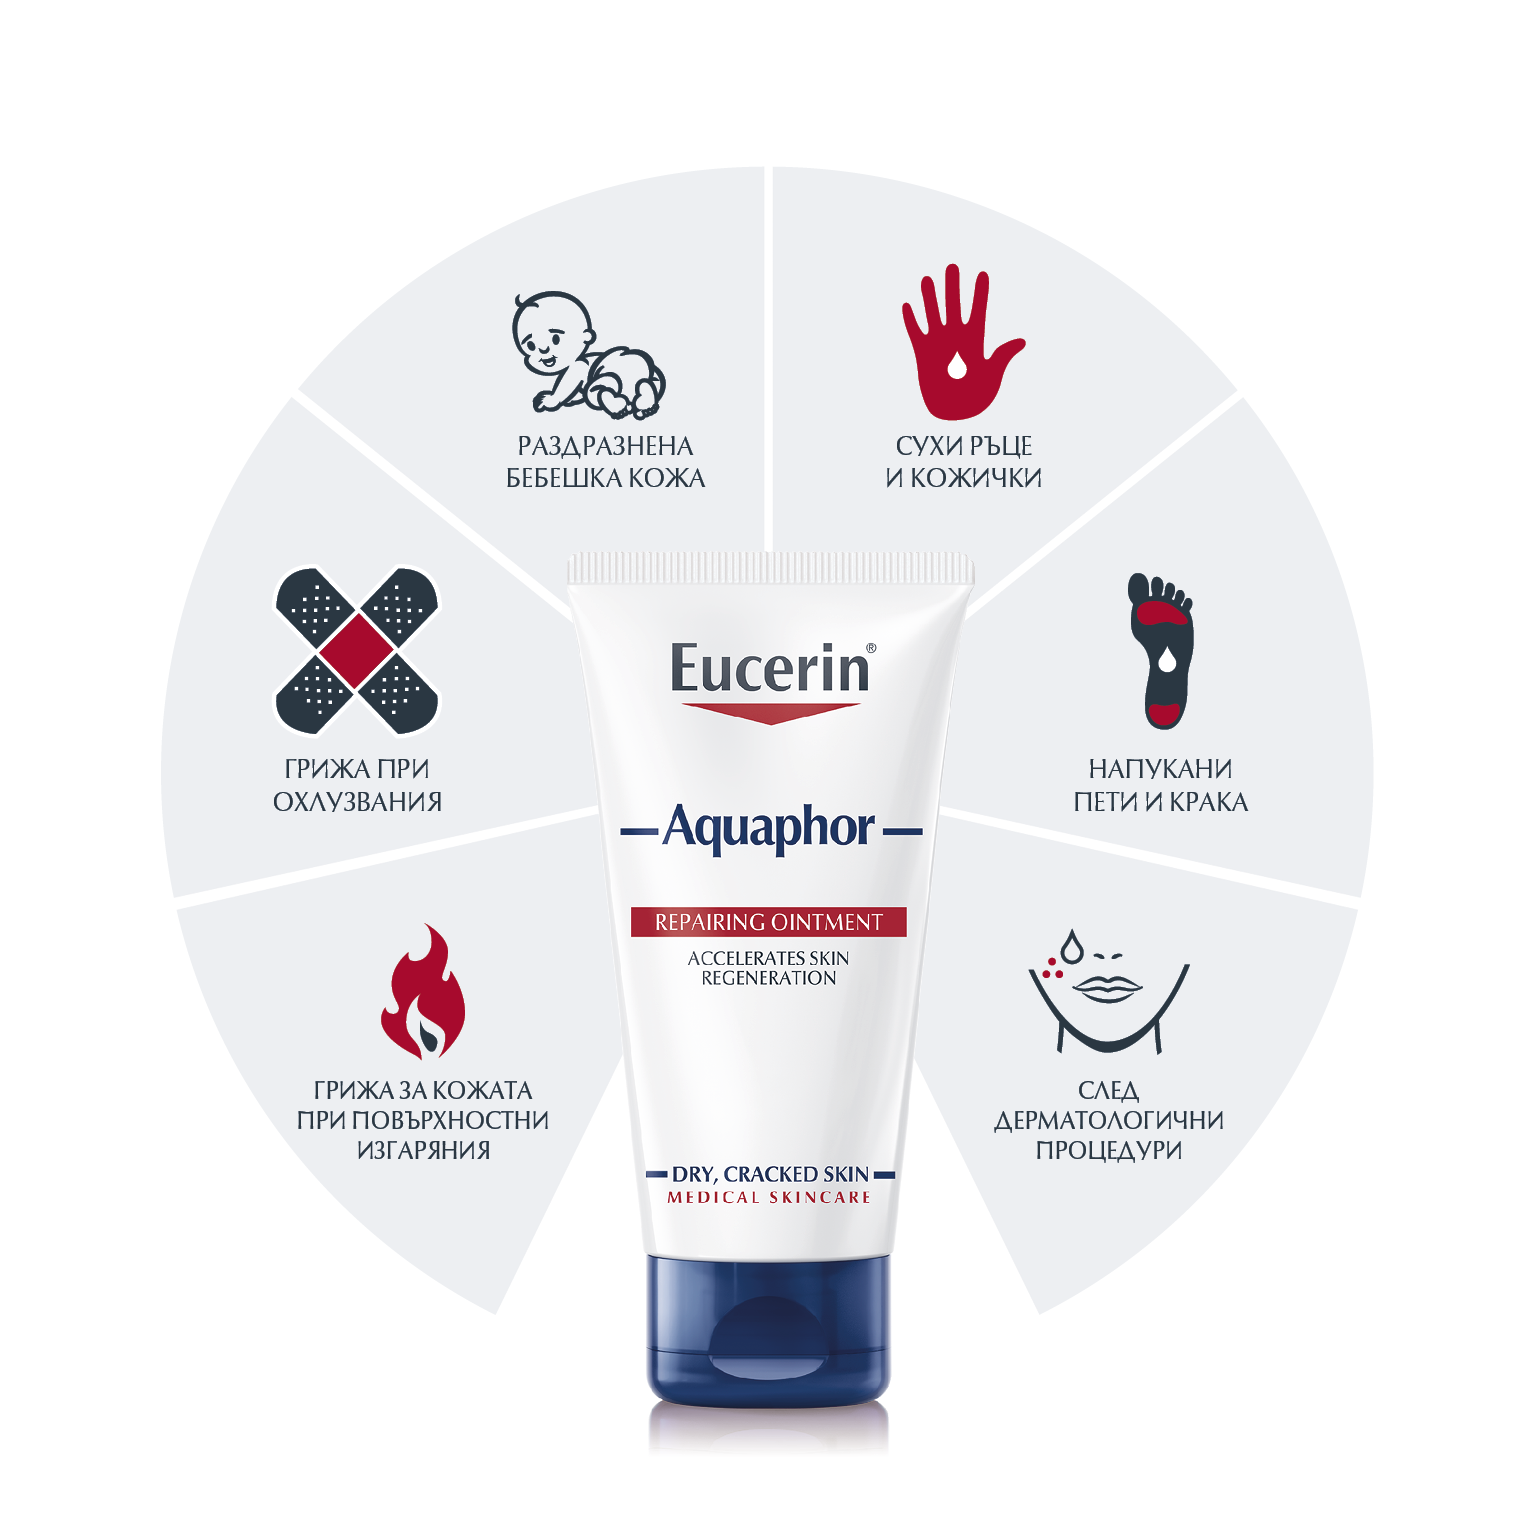 Eucerin Aquaphor Защитаващ мехлем за увредена кожа е многофункционално средство за спешна грижа